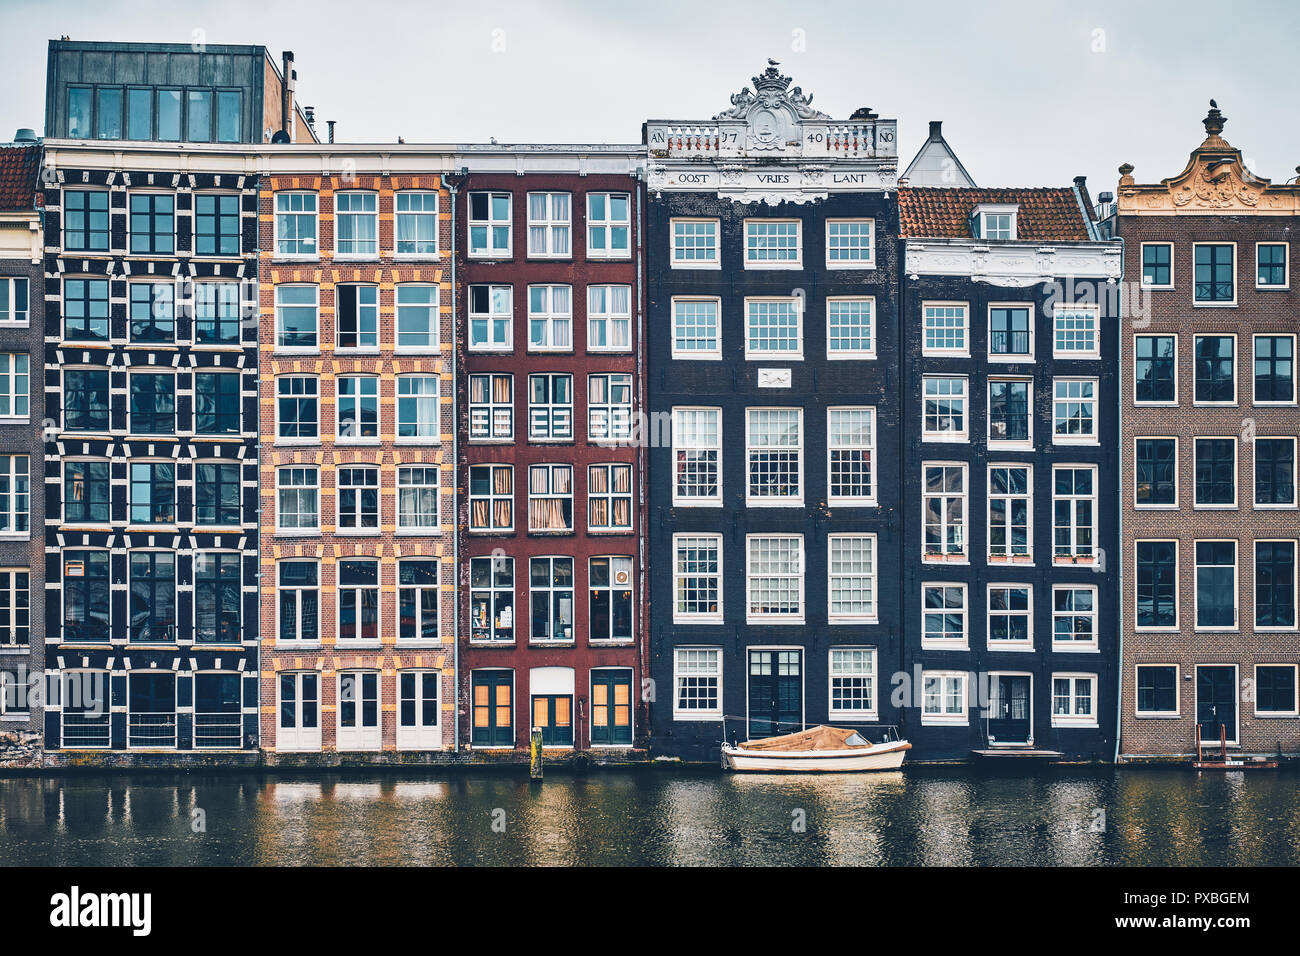 Häuser und Boot auf Gracht in Amsterdam Damrak mit Reflexion. Ams Stockfoto